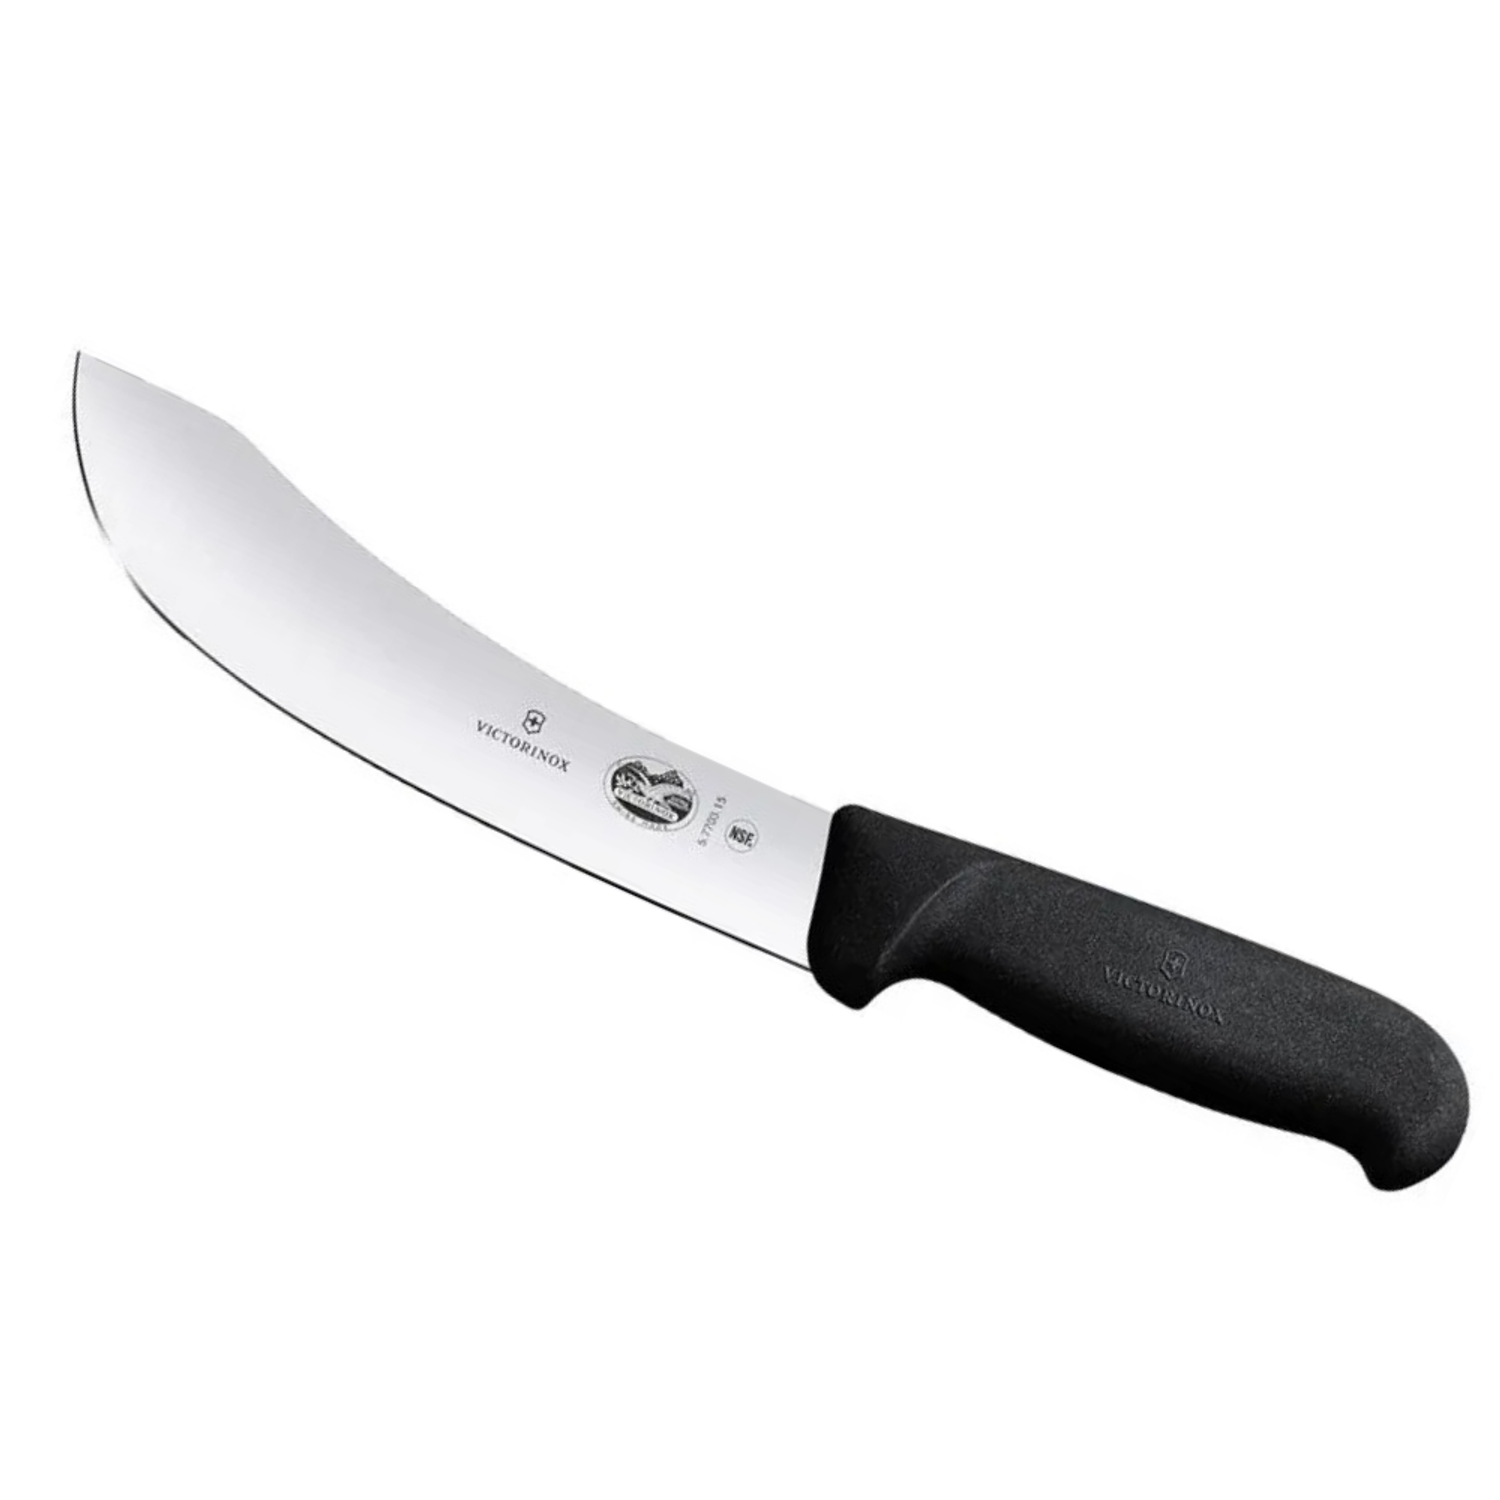 Нож кухонный Victorinox Skinning 5.7703.15 стальной разделочный лезвие 150 мм прямая заточка черный - фото 1